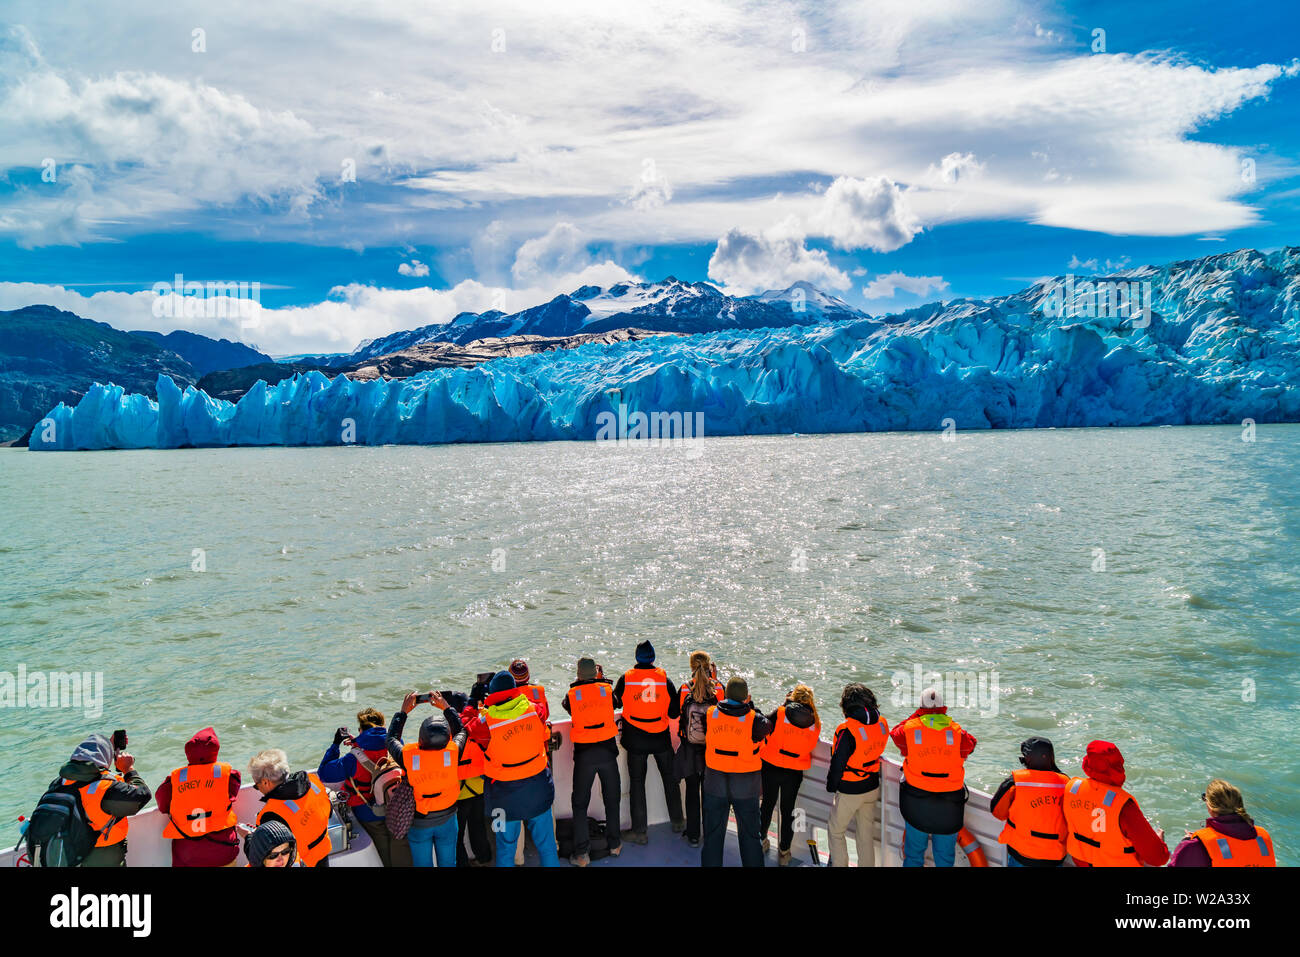 TORRES DEL PAINE, CHILI - 19 février 2016 : les touristes avec des gilets de couleur orange sur un bateau d'excursion dans le Glacier Grey dans Torres de Banque D'Images